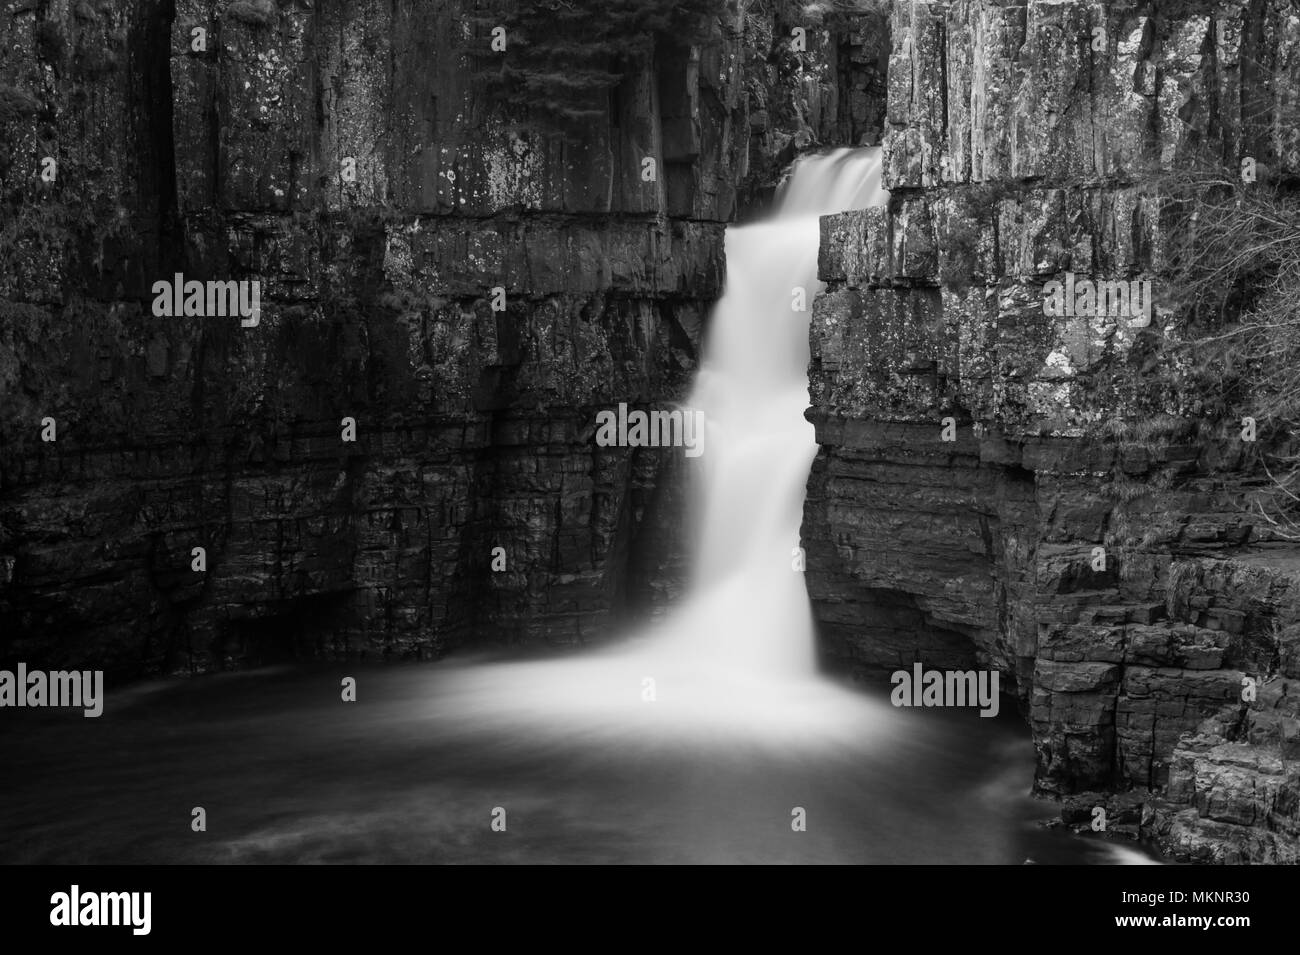 High Force Waterfall in Teesdale, North Pennines, AONB. Ein Bild mit langer Belichtung in Schwarzweiß. Stockfoto